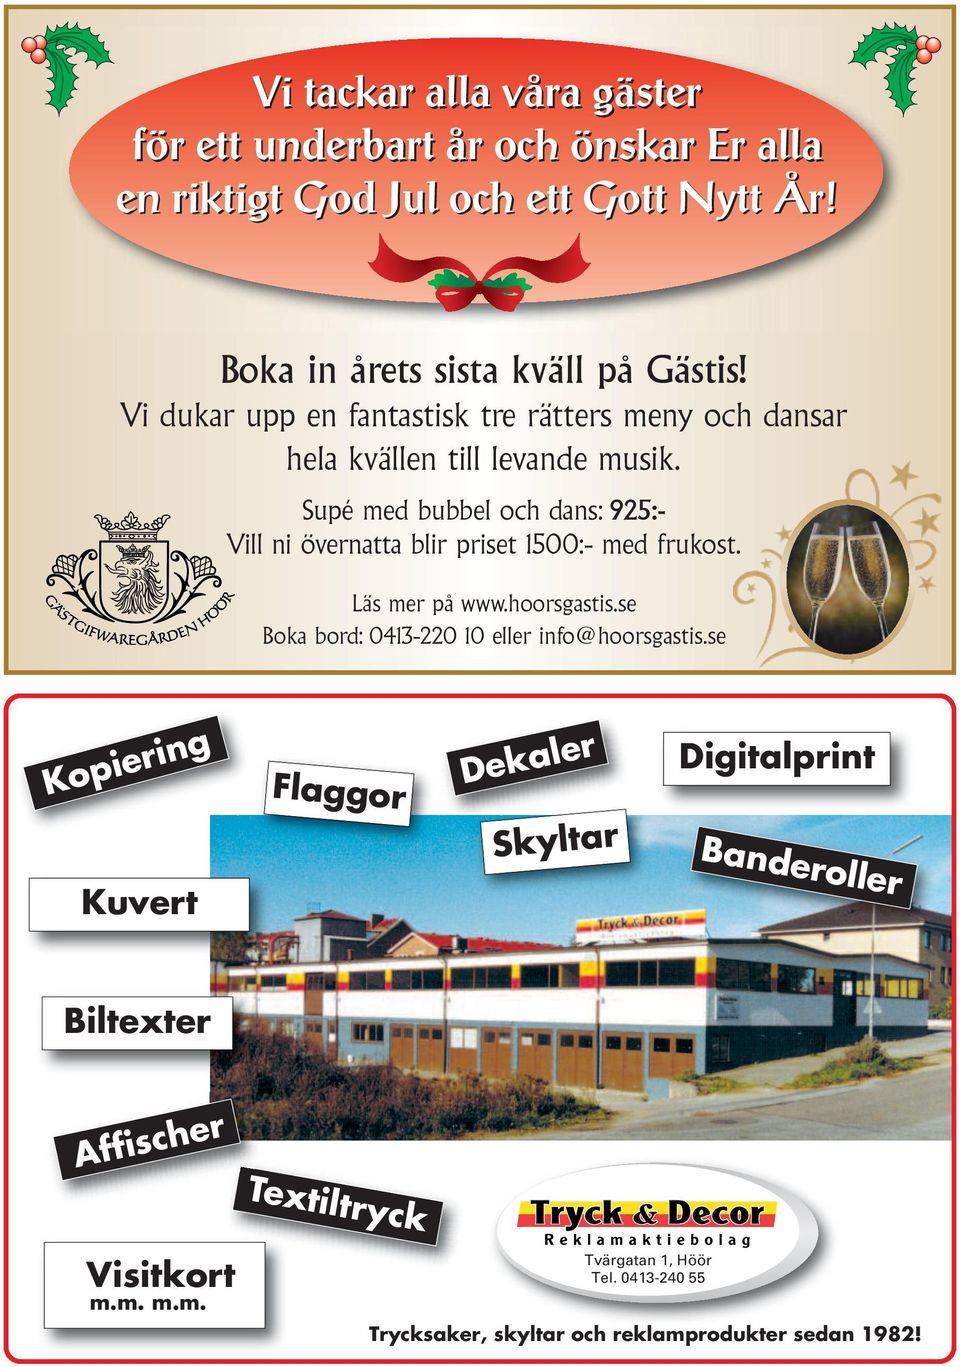 Supé med bubbel och dans: 925:- Vill ni övernatta blir priset 1500:- med frukost. Läs mer på www.hoorsgastis.